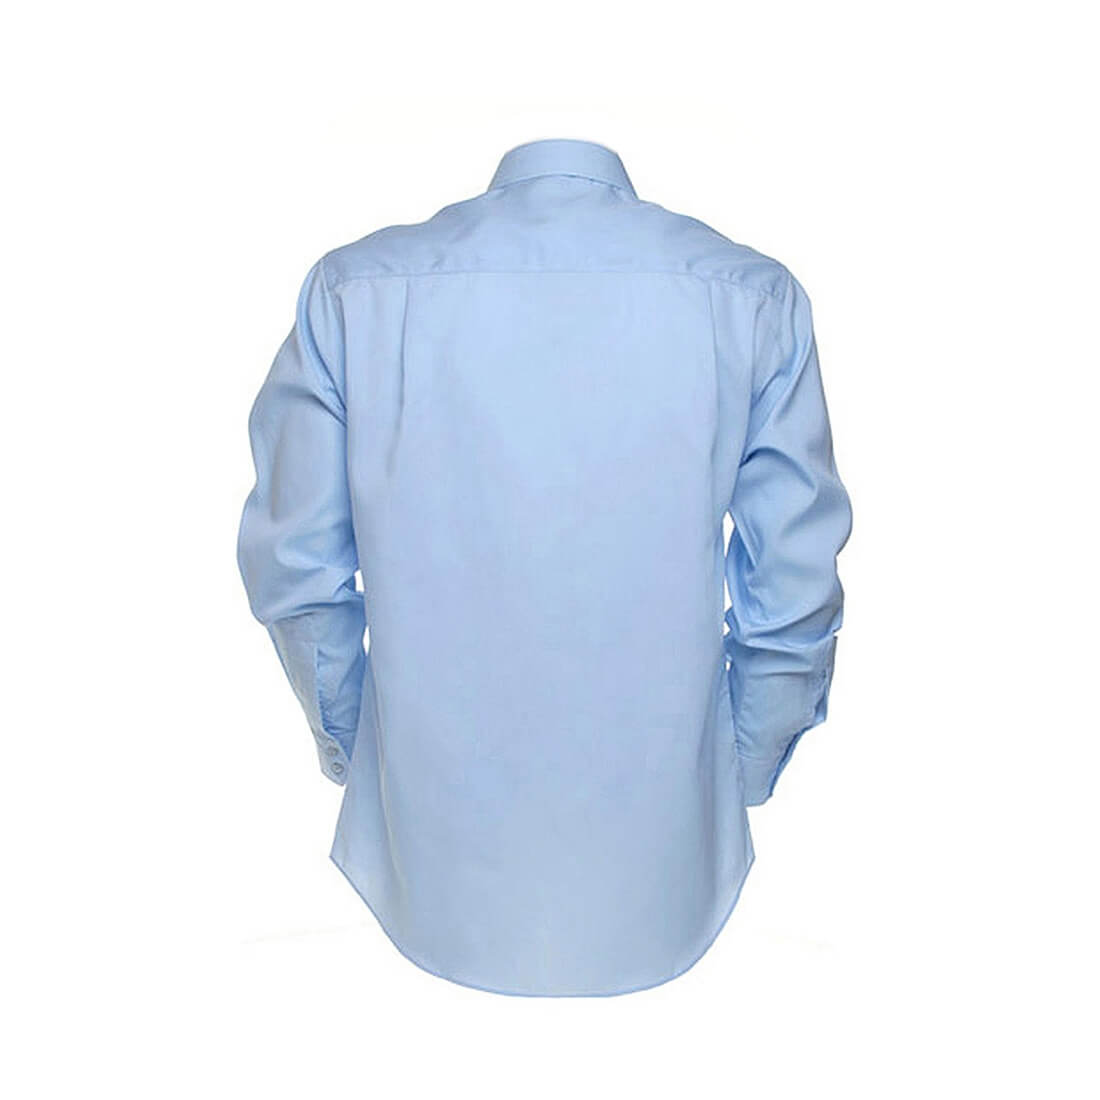 Premuim Non Iron Corporate Shirt LS - Les vêtements de protection